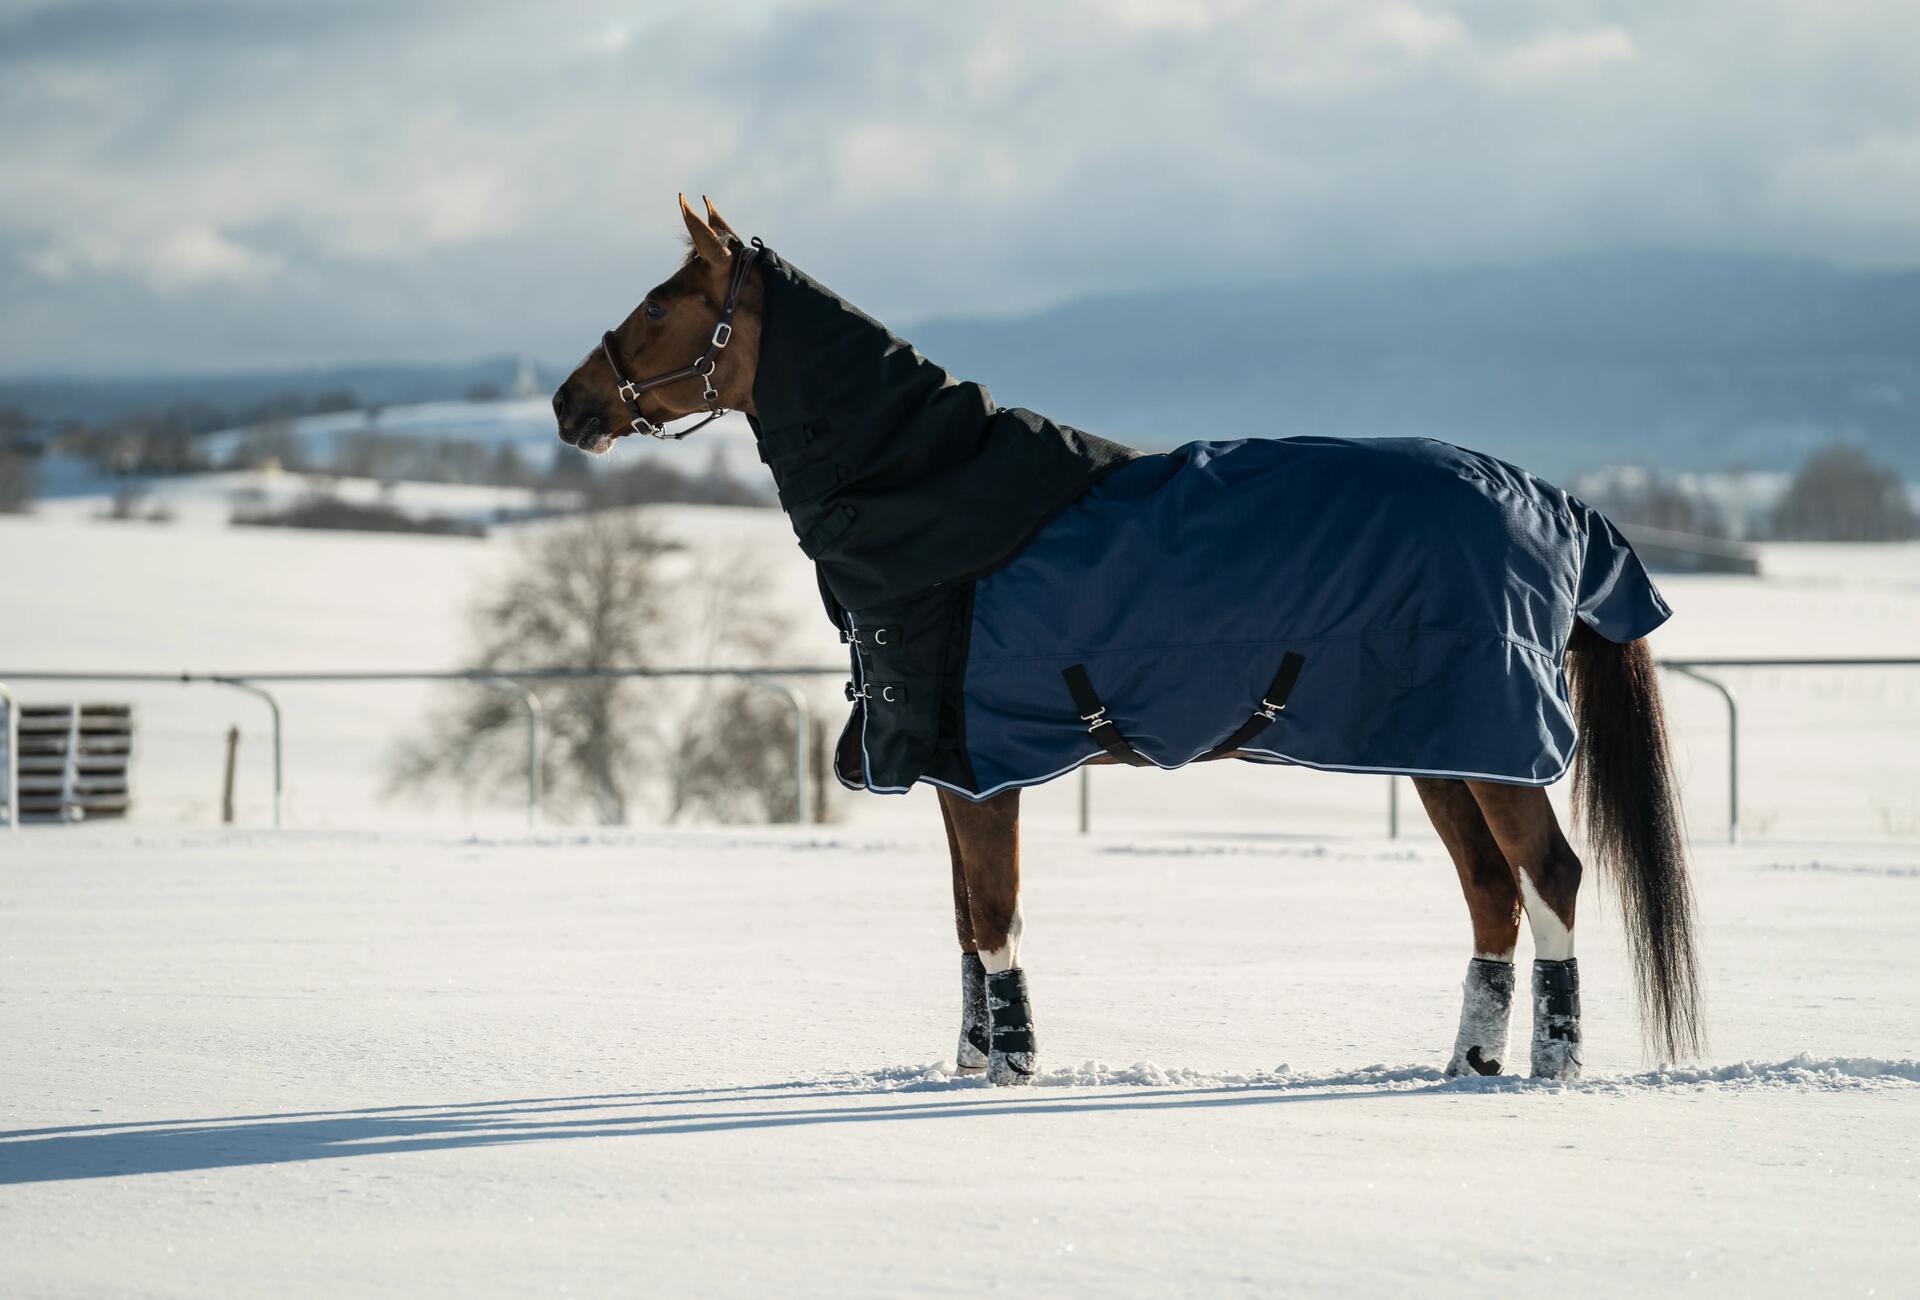 Pferd mit Regendecke im Schnee